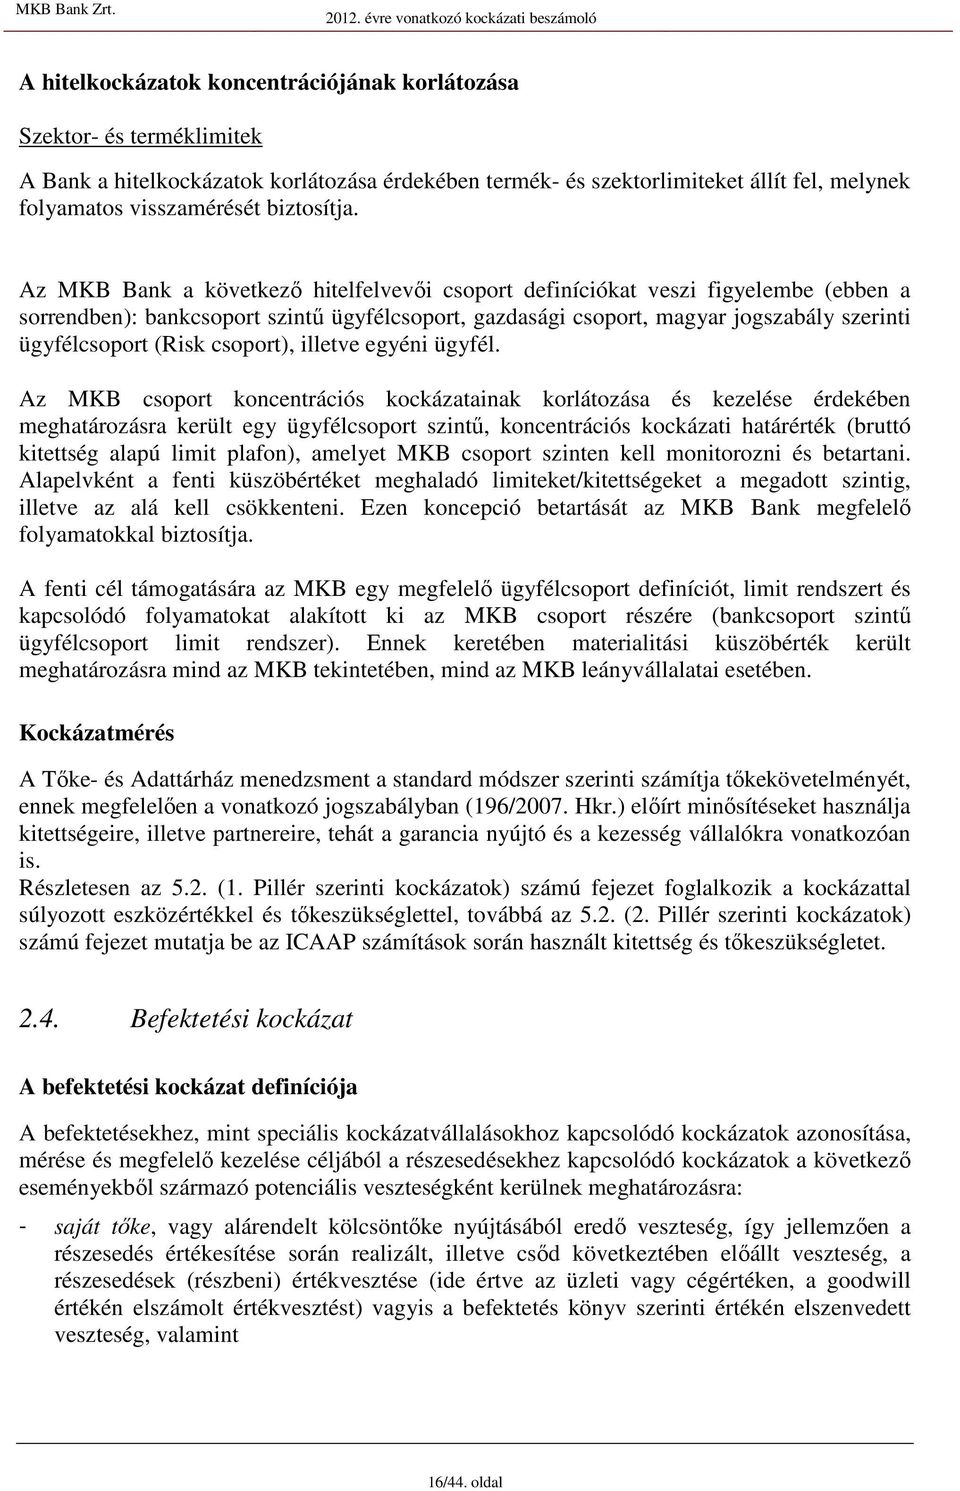 Az MKB Bank a következı hitelfelvevıi coport definíciókat vezi figyelembe (ebben a orrendben): bankcoport zintő ügyfélcoport, gazdaági coport, magyar jogzabály zerinti ügyfélcoport (Rik coport),